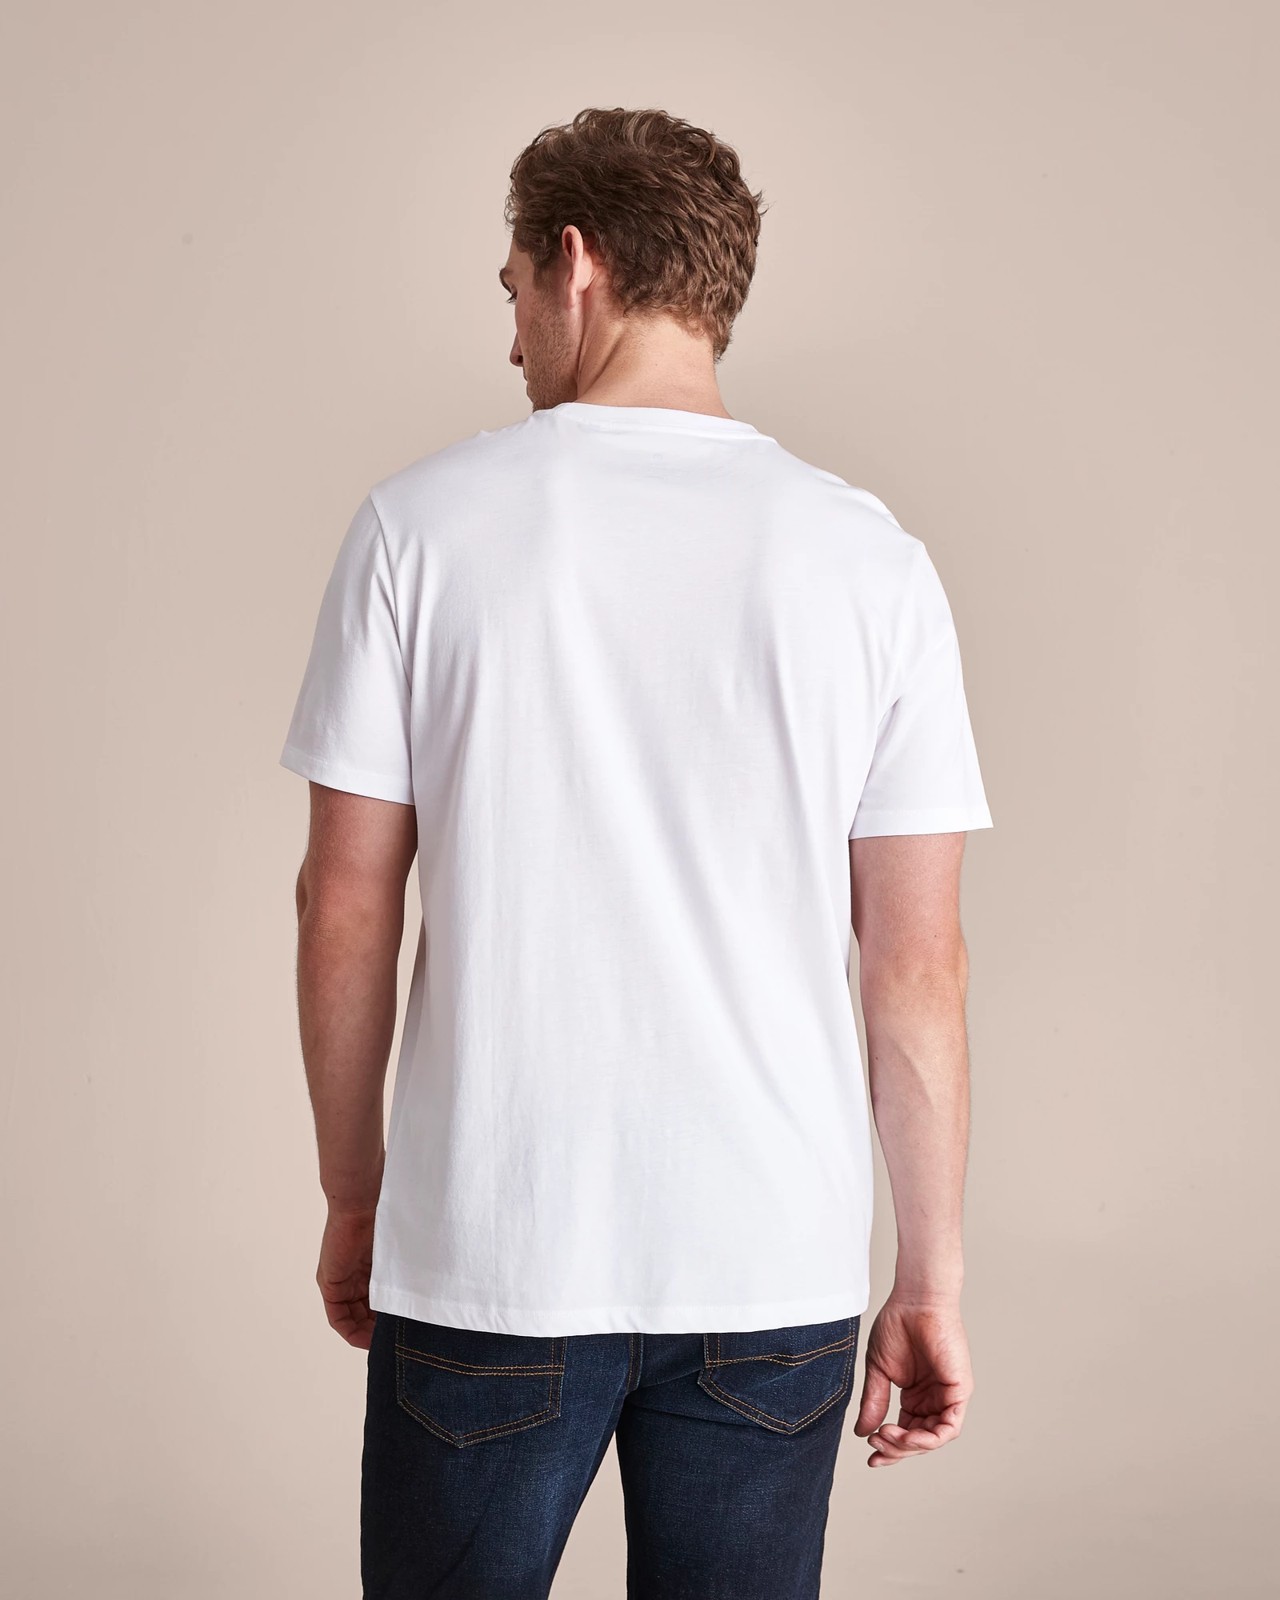 Supima Cotton T-Shirt - White | Target Australia